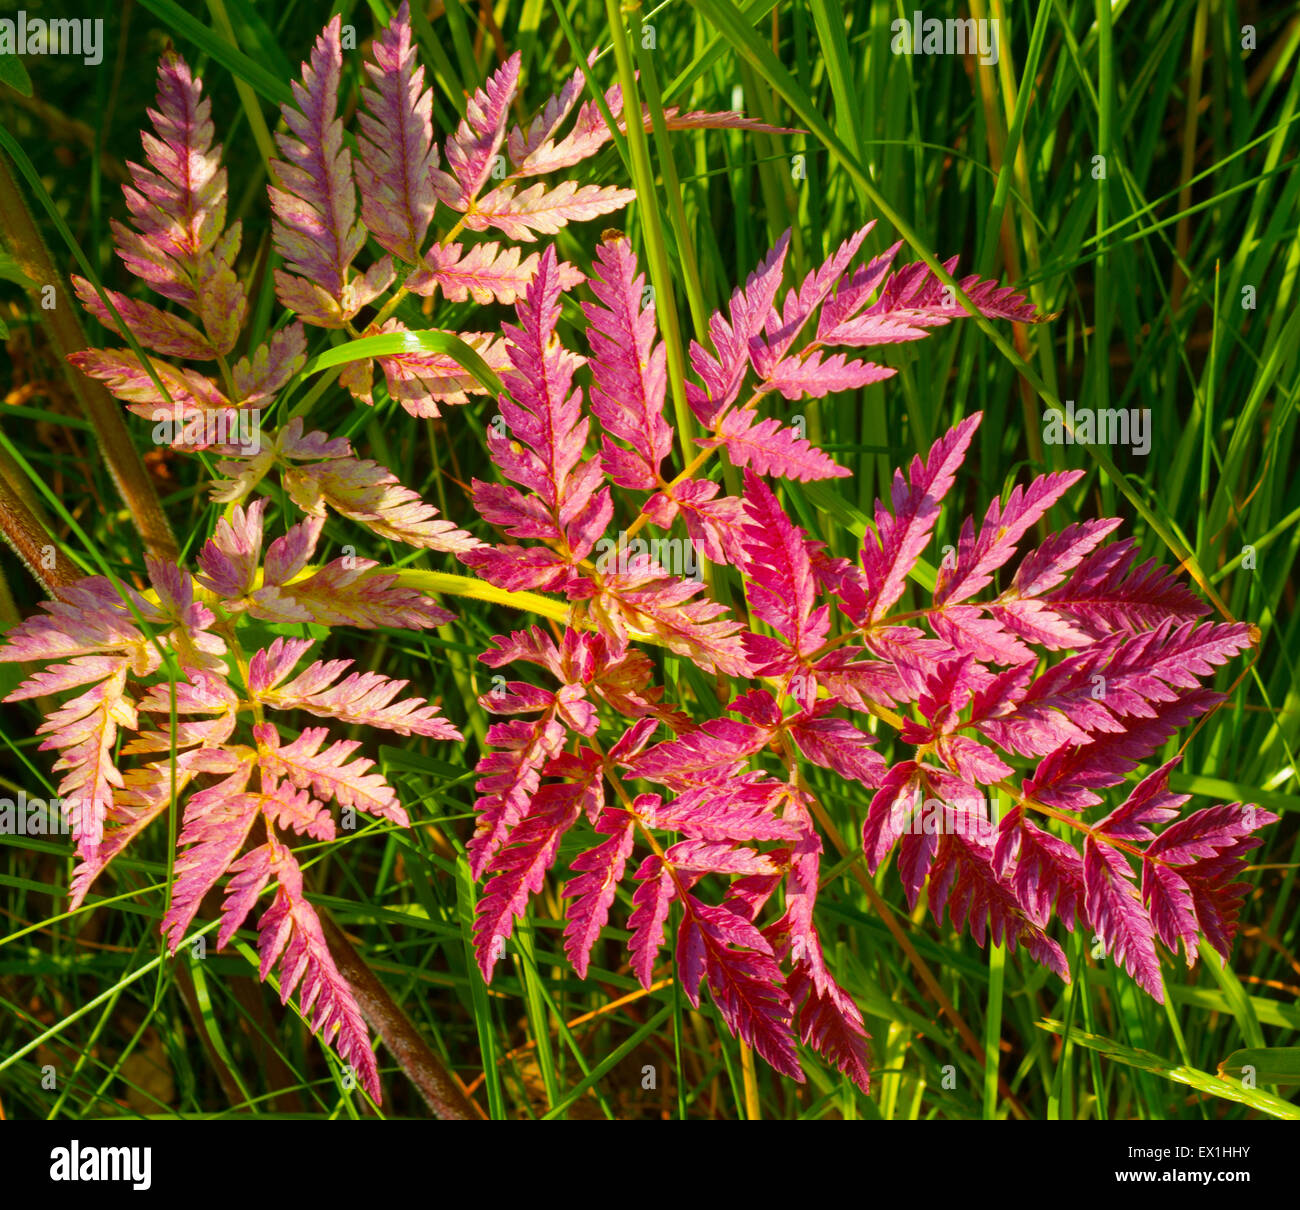 Impianto Copyri foresta con foglie di colore viola su uno sfondo di erba verde.(Anthriscus).(Apiaceae). (Apiales). Foto Stock